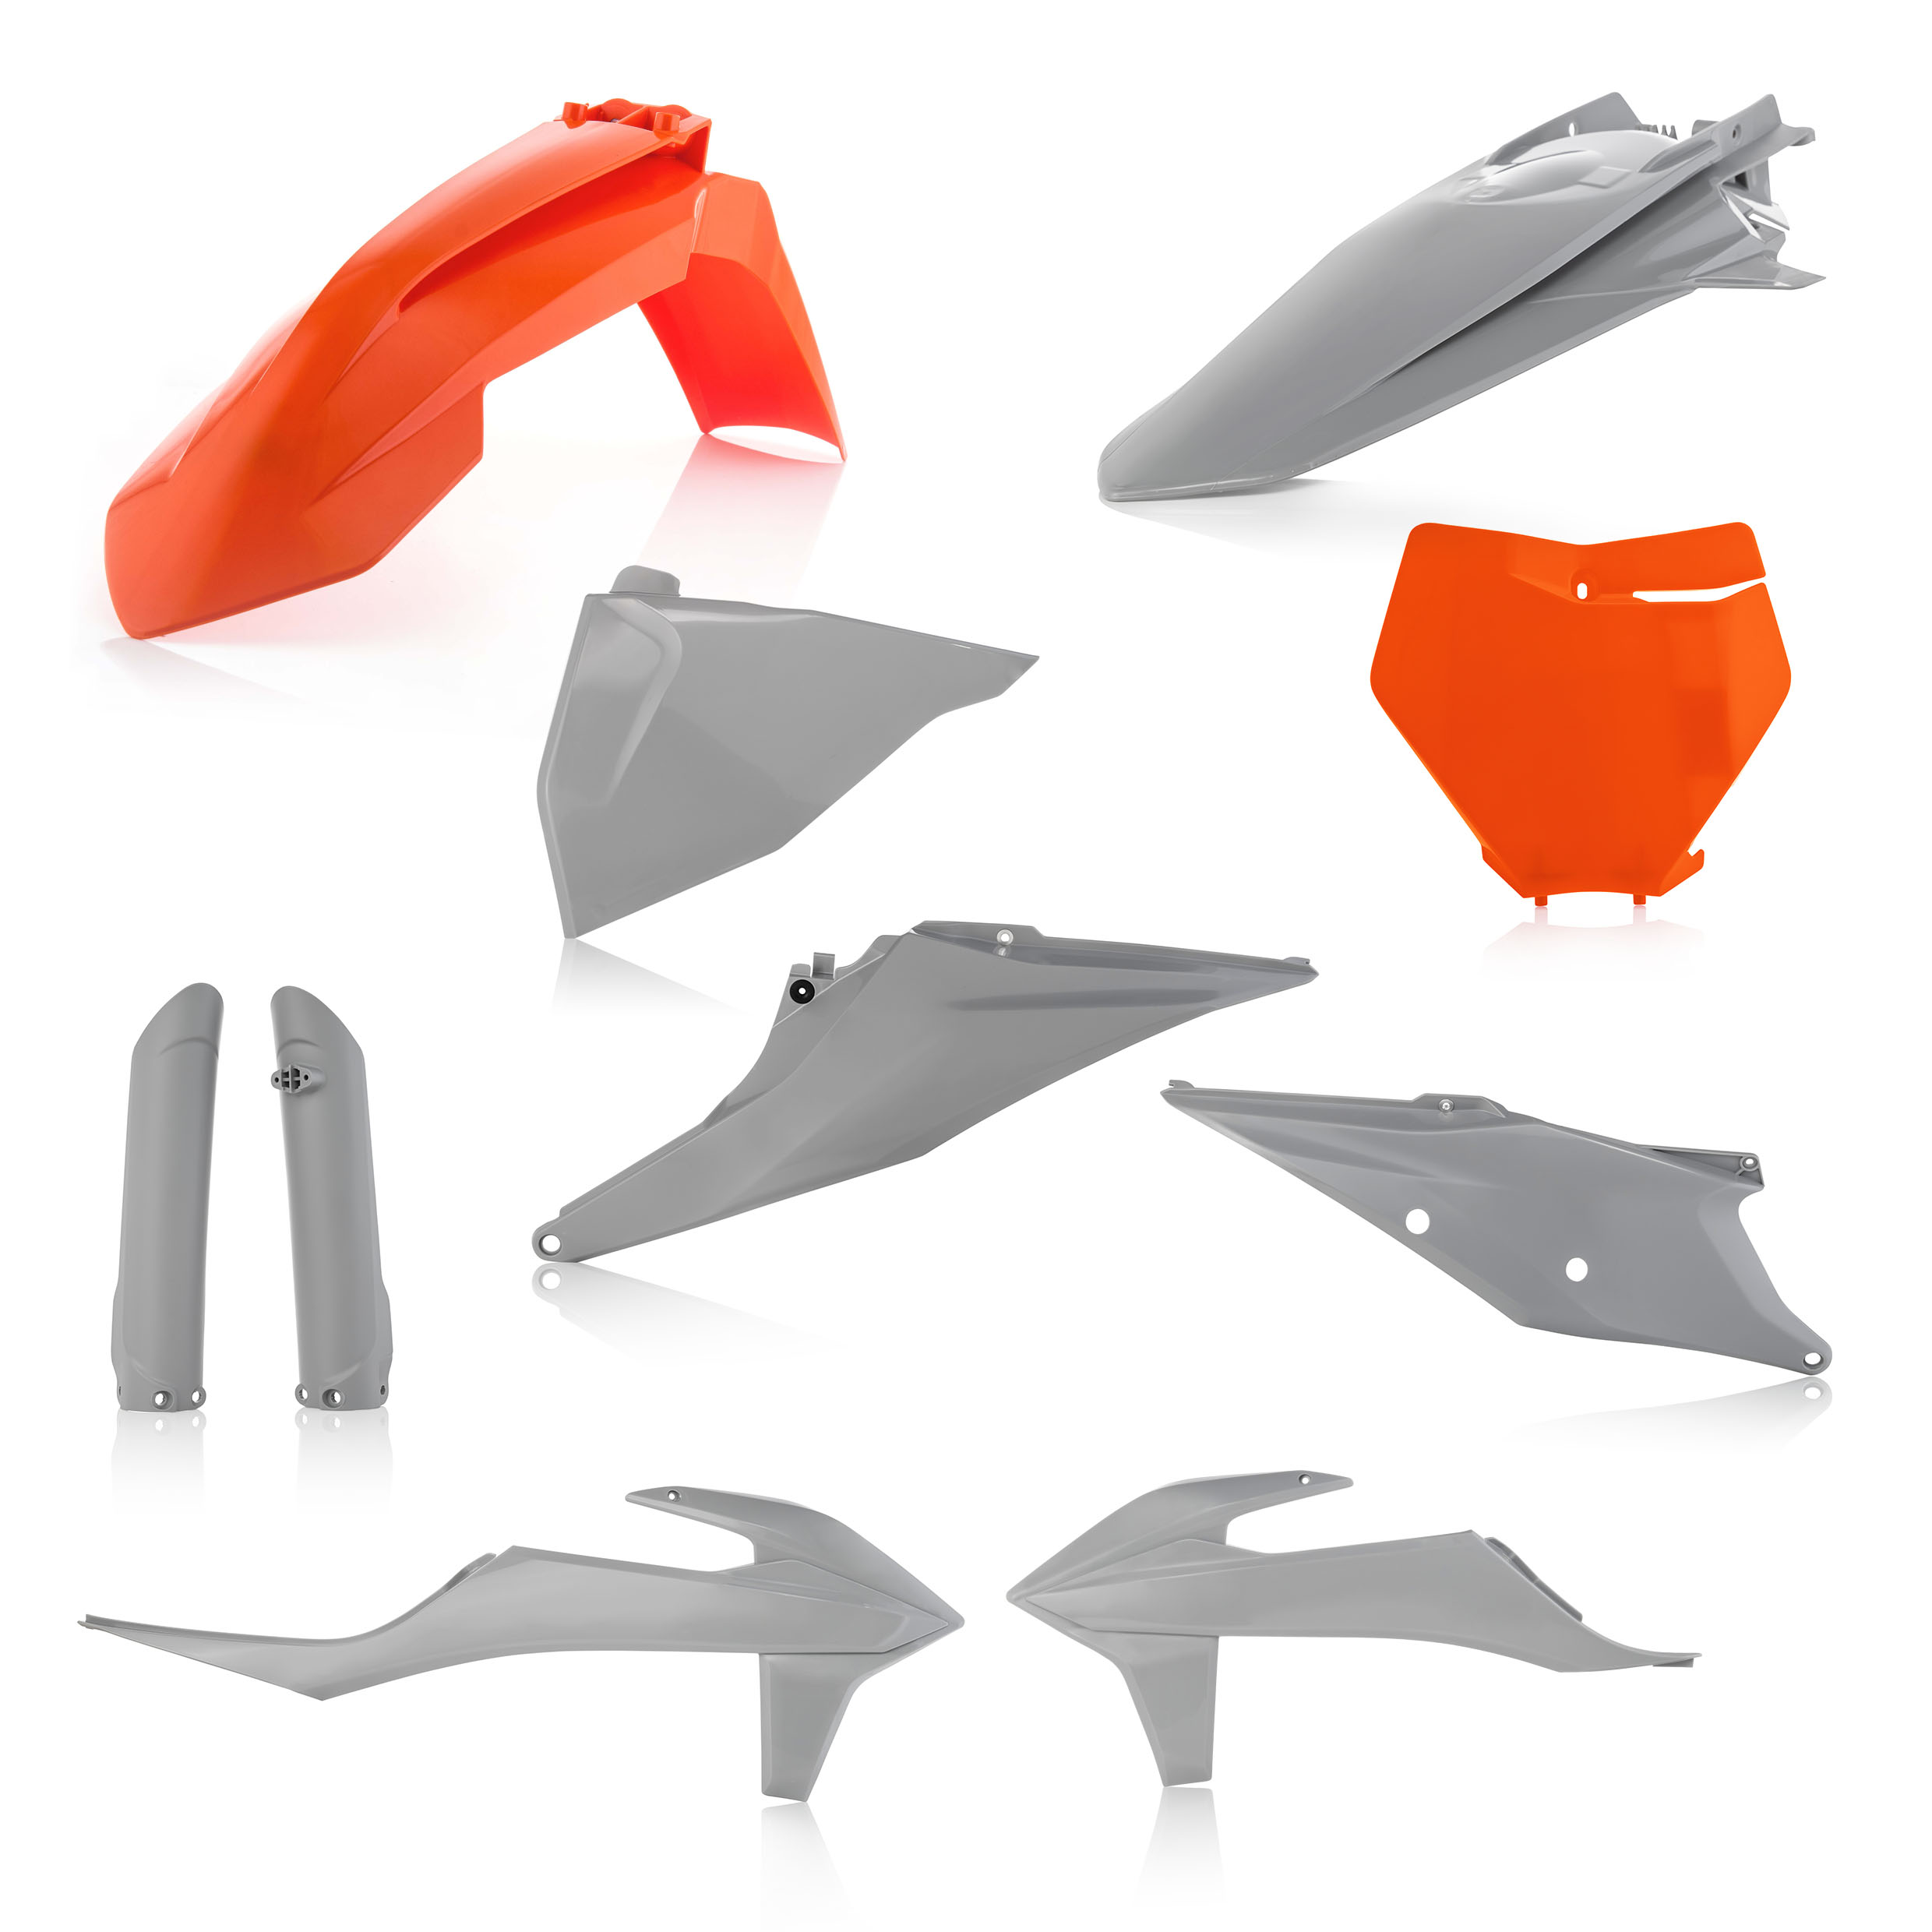 Plastikteile für deine KTM SX / SX-F 125-450 in orange-grau bestehend aus Kotflügel vorn Kotflügel hinten Kühlerspoiler Seitenteile Gabelschützer Startnummerntafel Air Box Cover